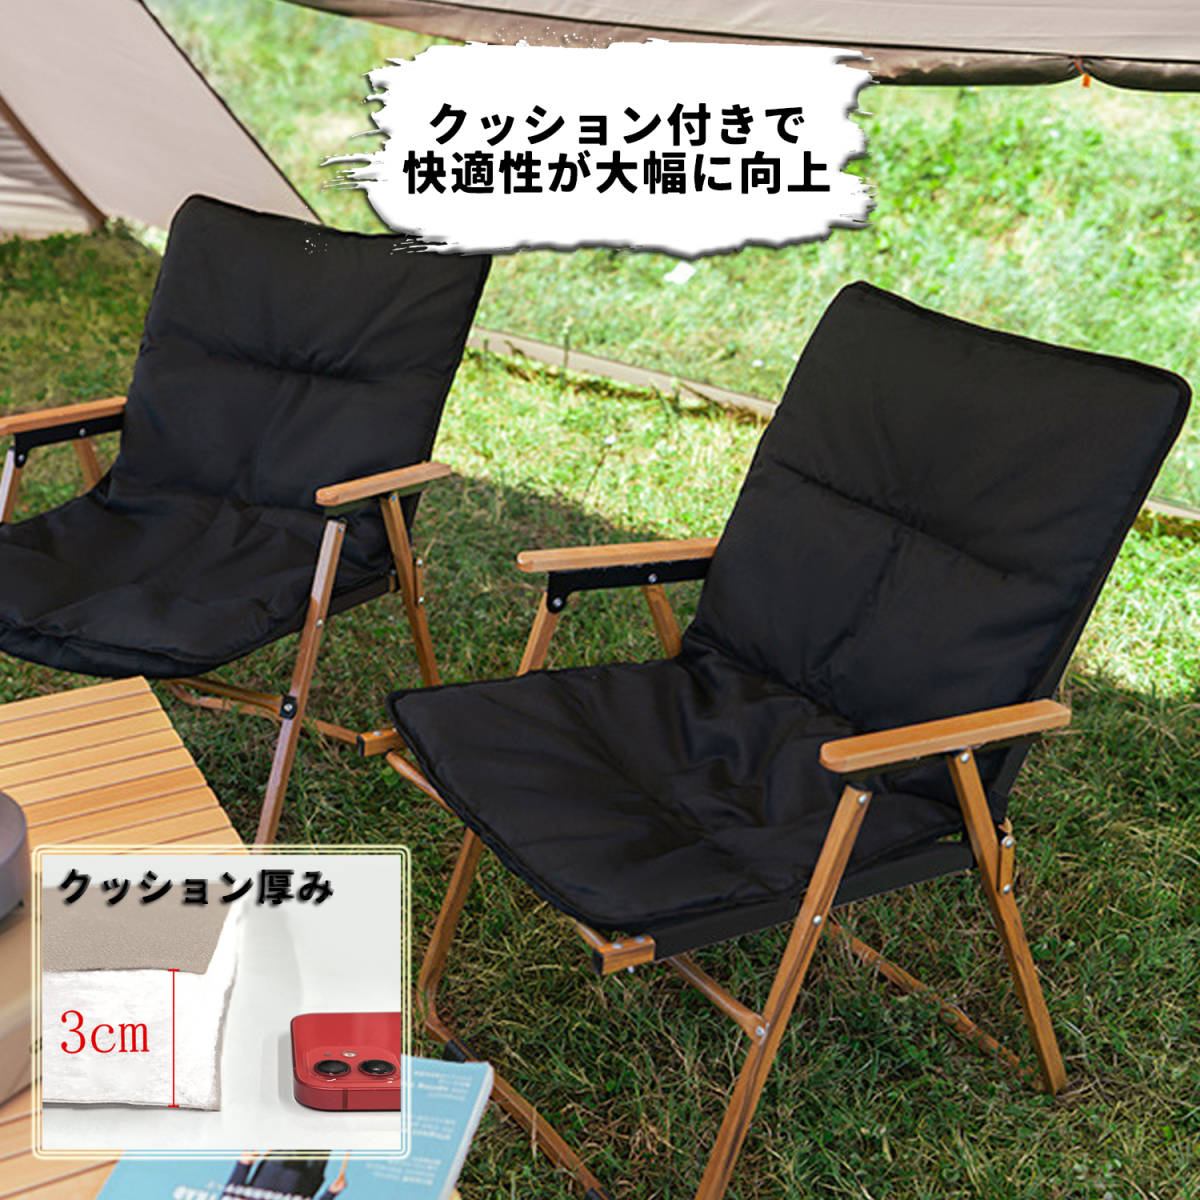 2個セット！ウッドチェア 木製イス 椅子 黒 木目 クッション 小物置き 収納袋 軽量 キャンプ アウトドア ソロ グループ ファミリー